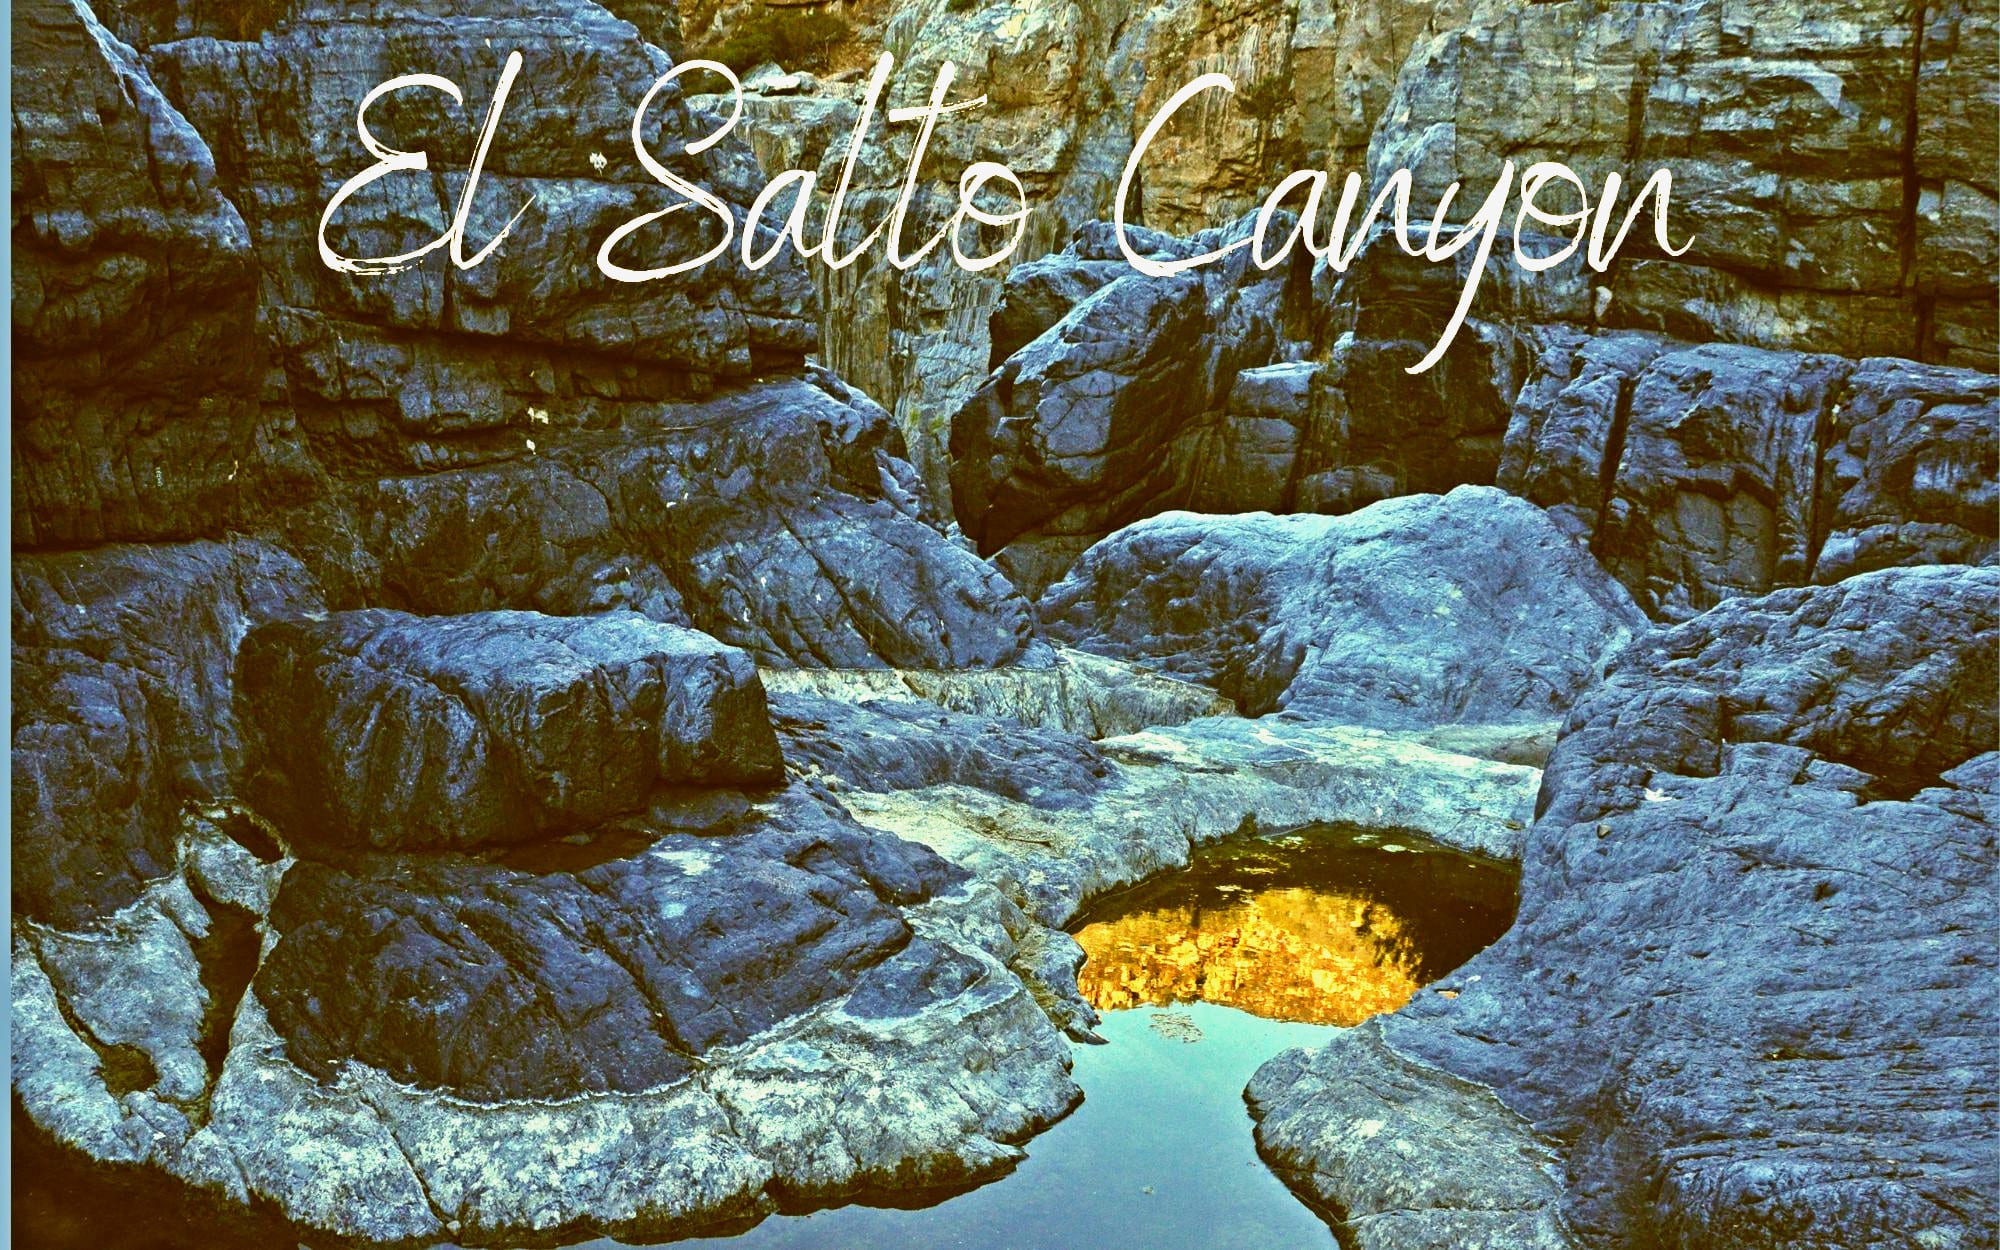 El Salto Canyon near Ensenada Baja California